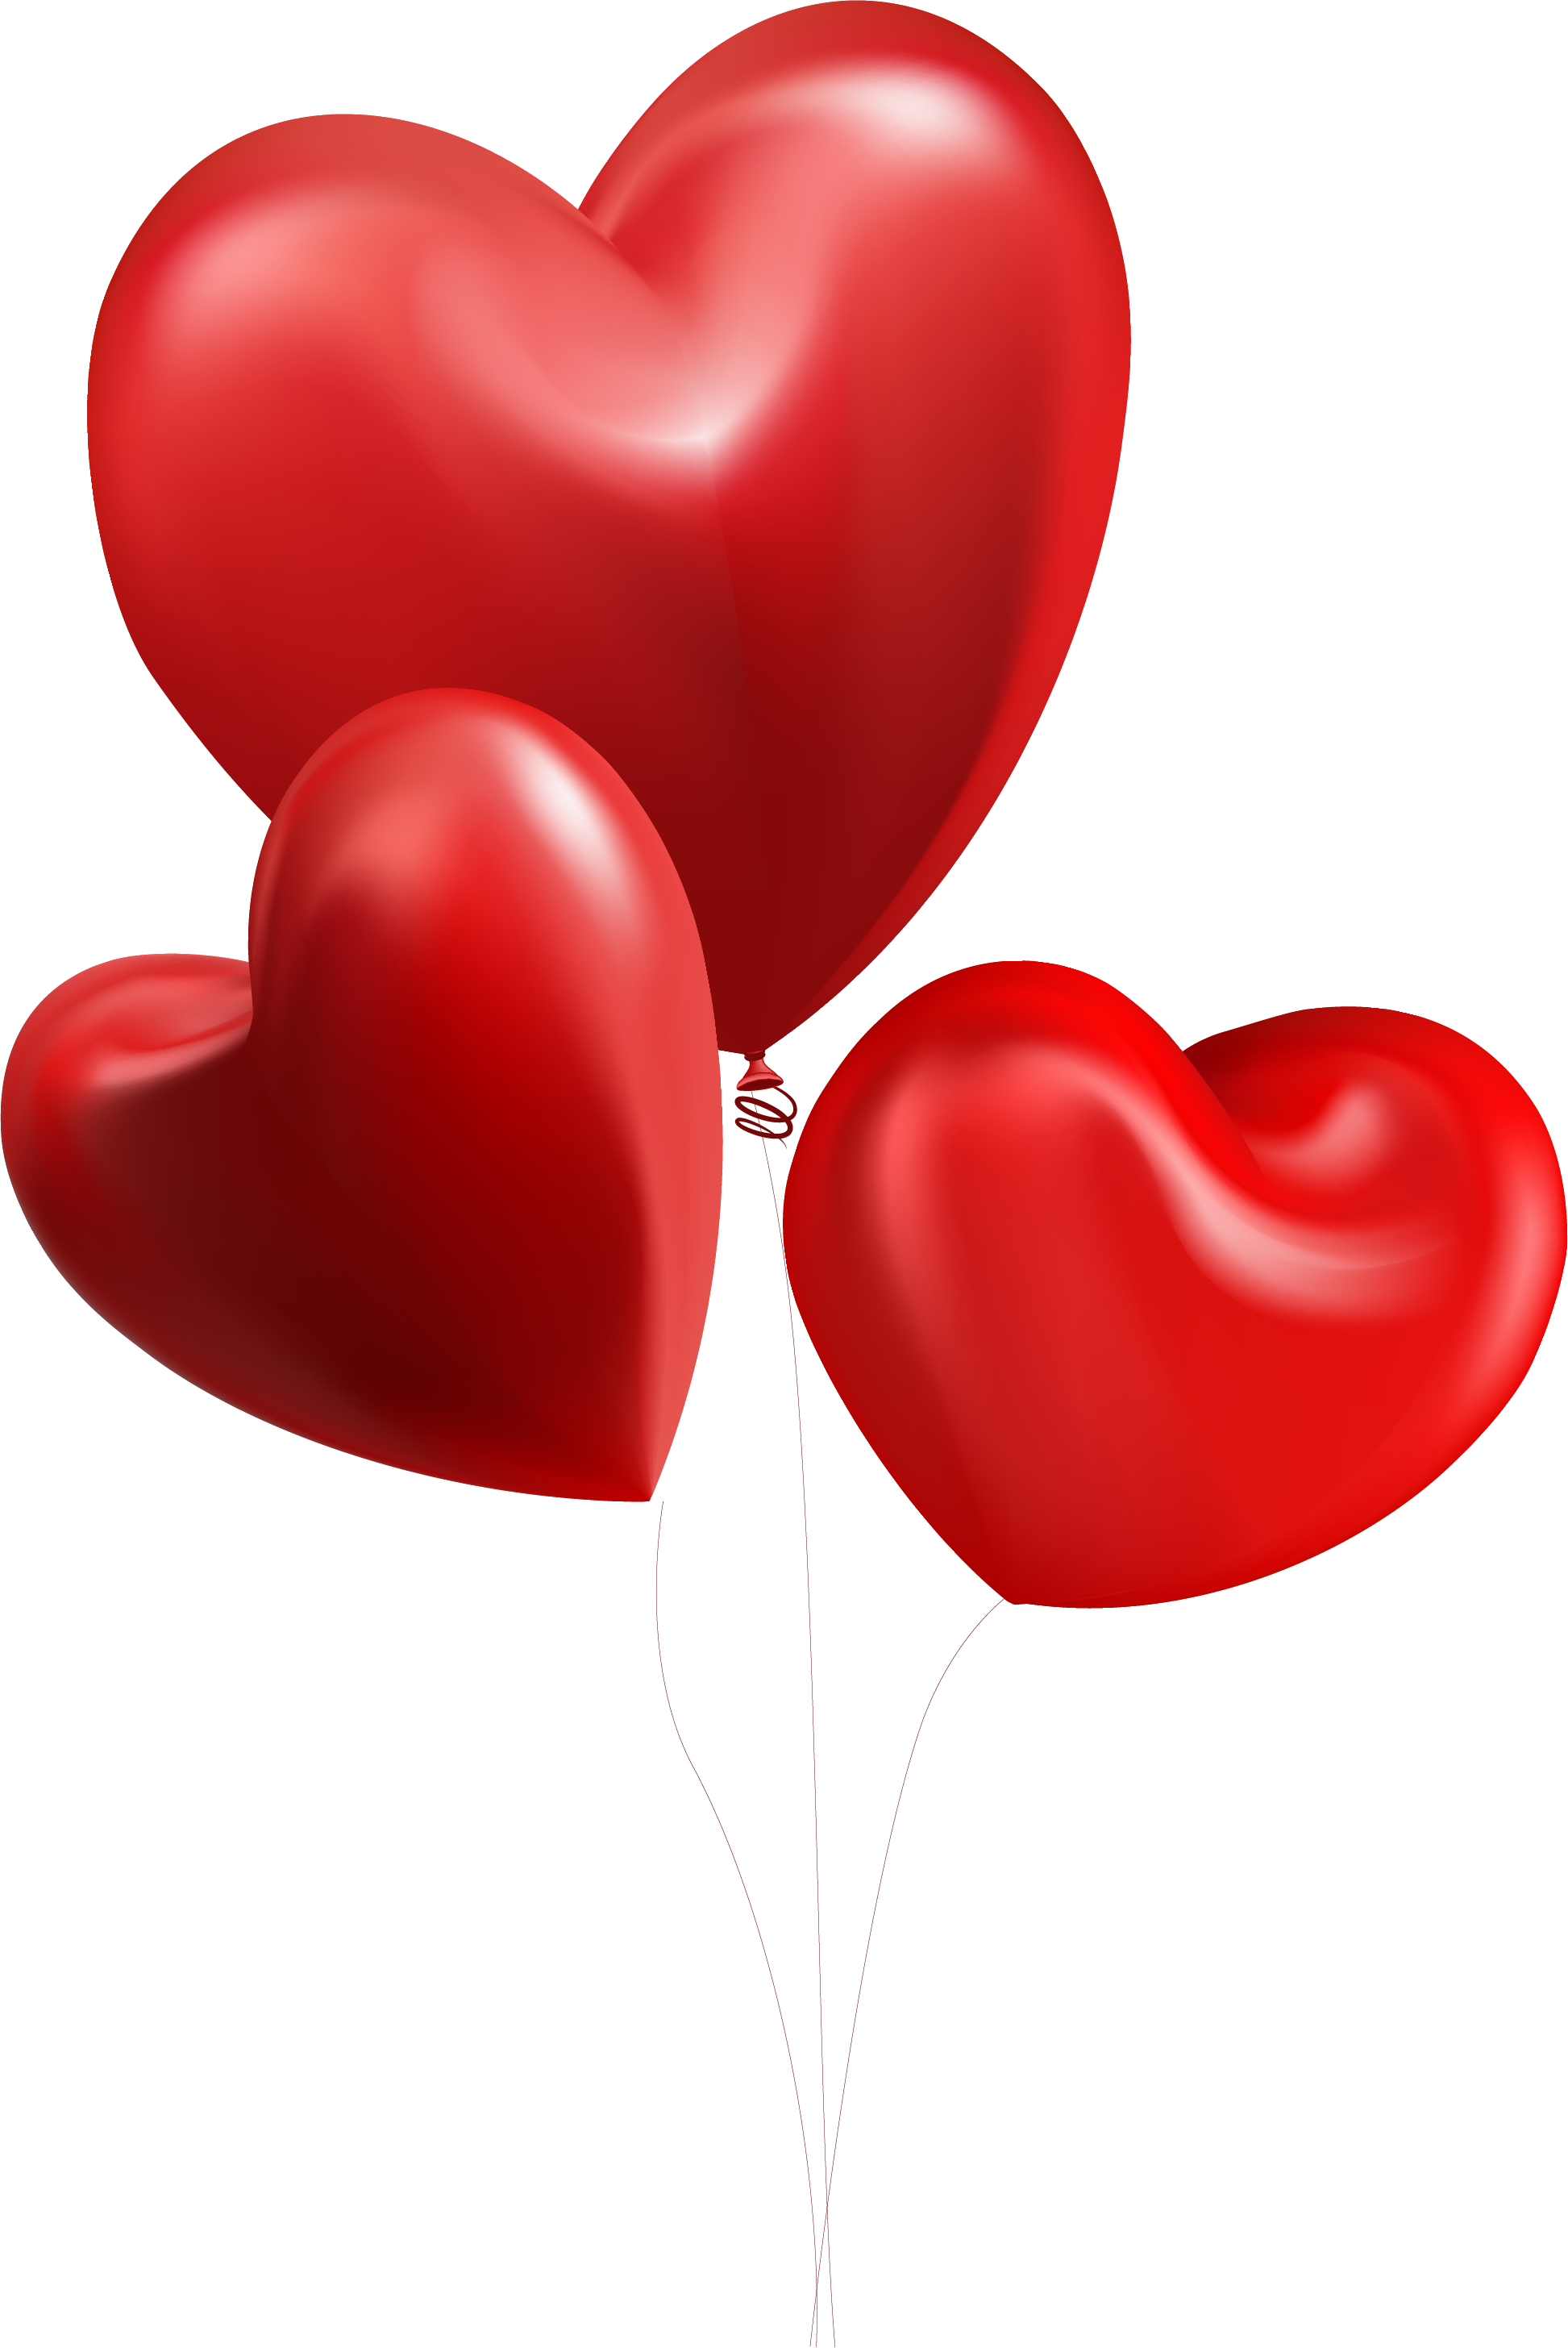 Valentine's Day Heart Balloon Illustration - Valentine's Day (1945x2912)